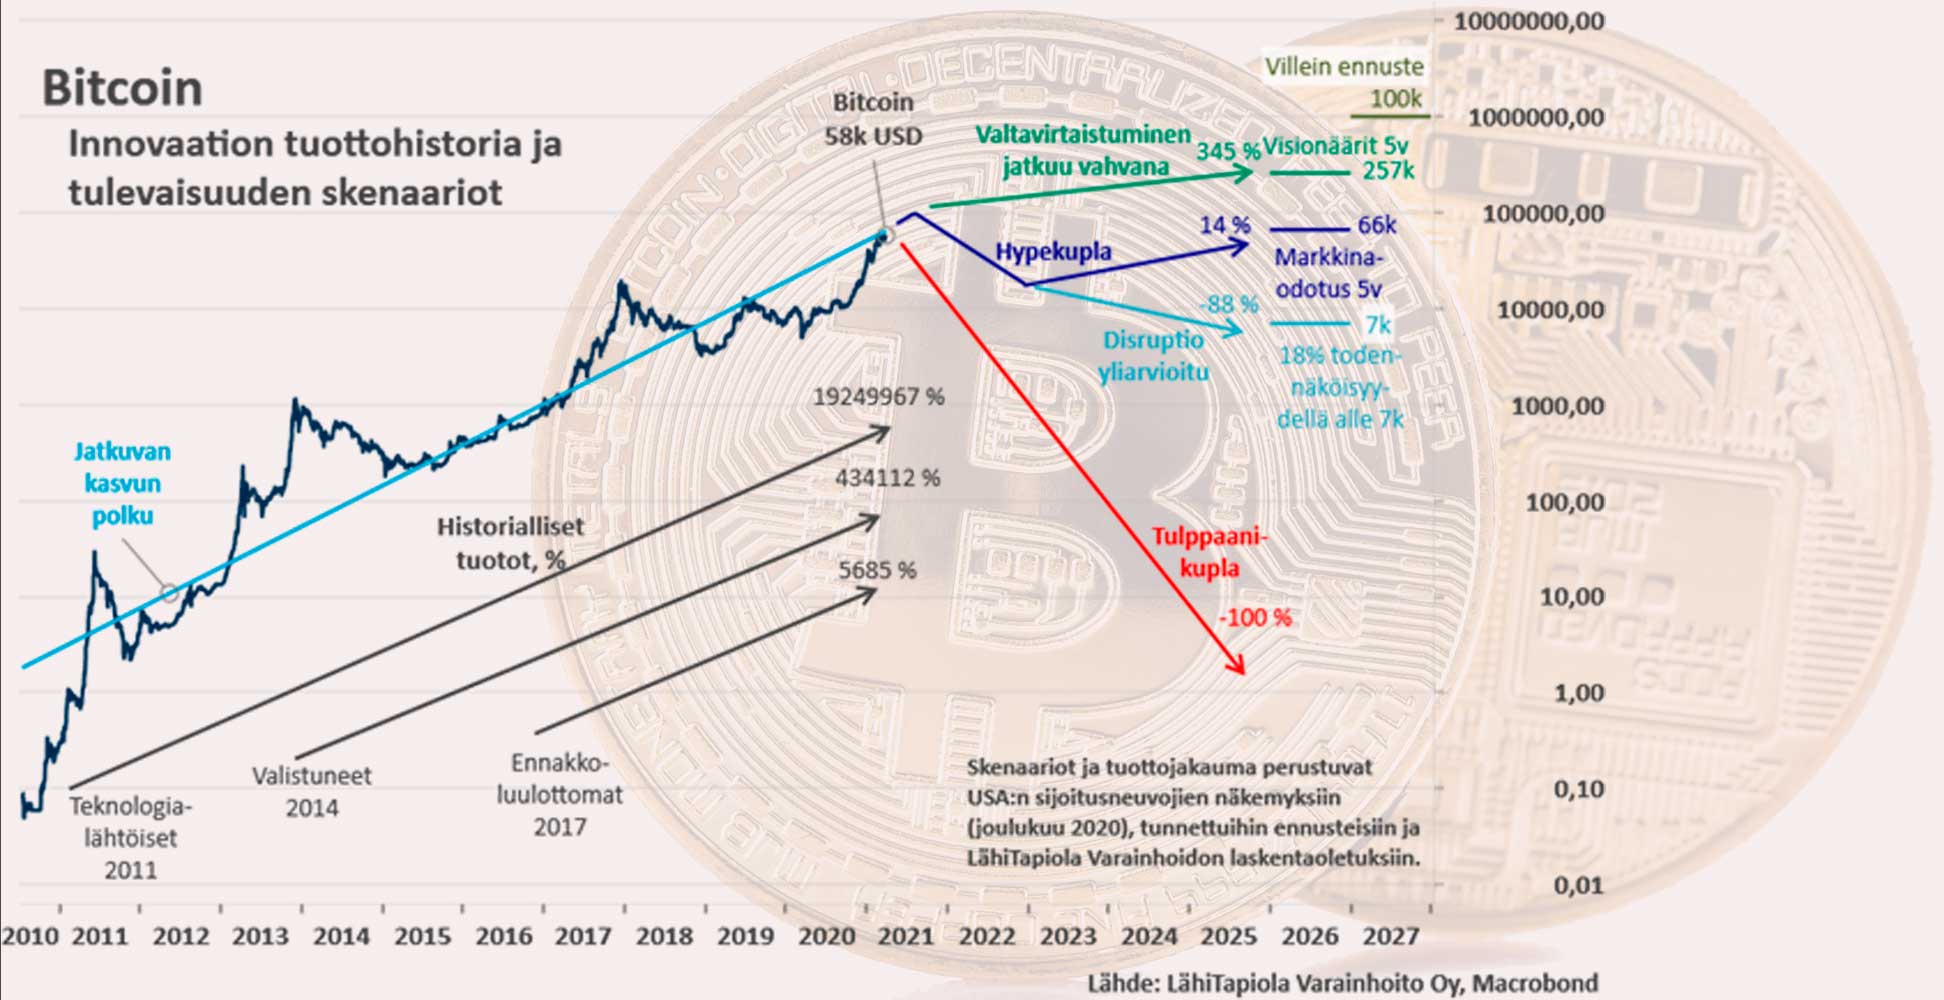 Kuva esittää bitcoinin hintakehitystä dollareissa 2010-2020 sekä kolme mahdollista skenaariota virtuaalivaluutan kehityskestä jatkossa